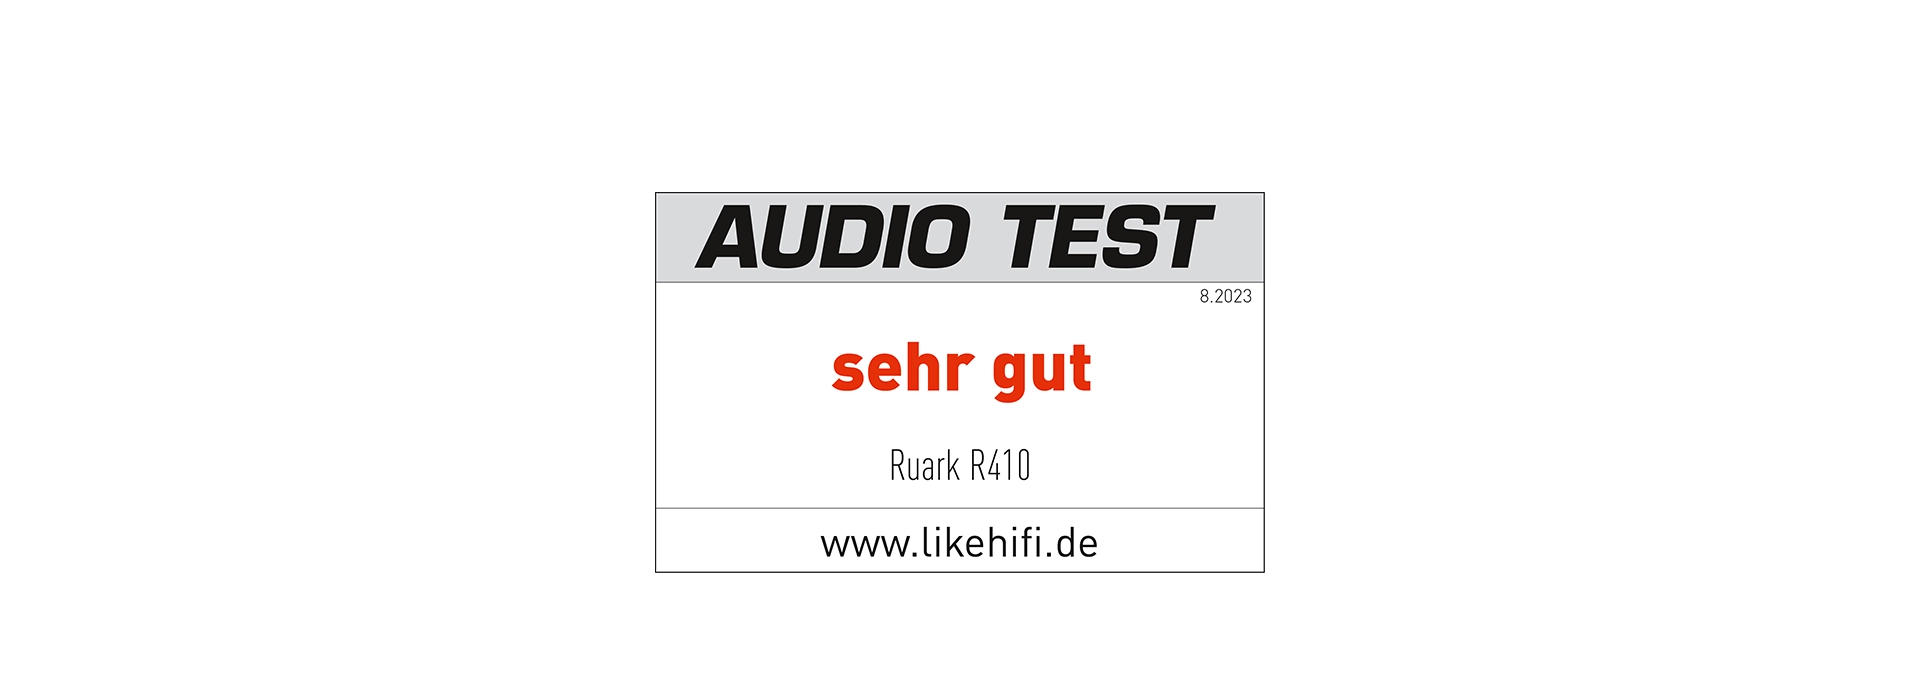 AUDIO TEST | Ruark R410